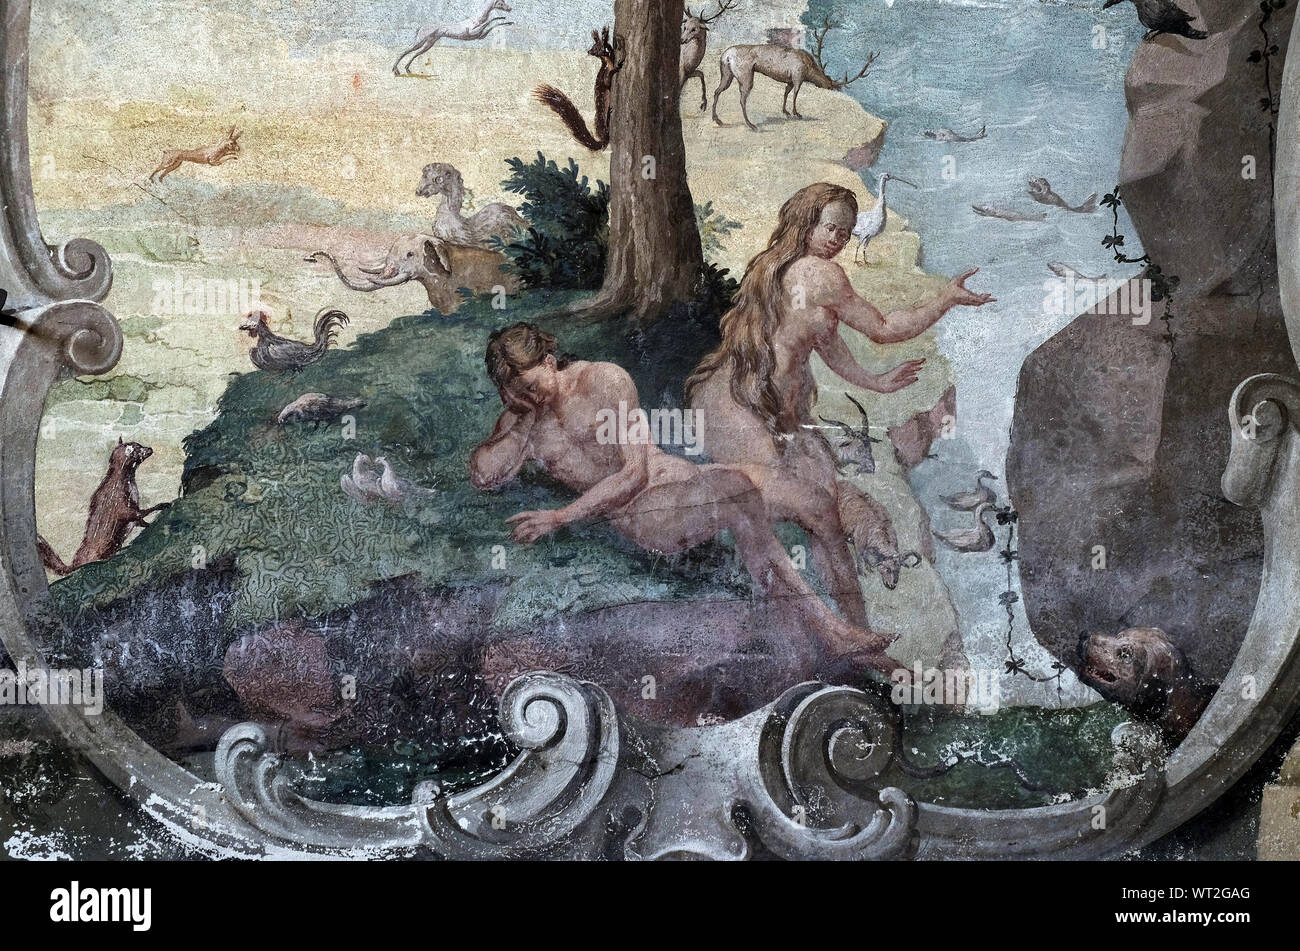 Adamo ed Eva nel giardino di Eden, affresco sul soffitto di San Giovanni Battista a Zagabria in Croazia Foto Stock